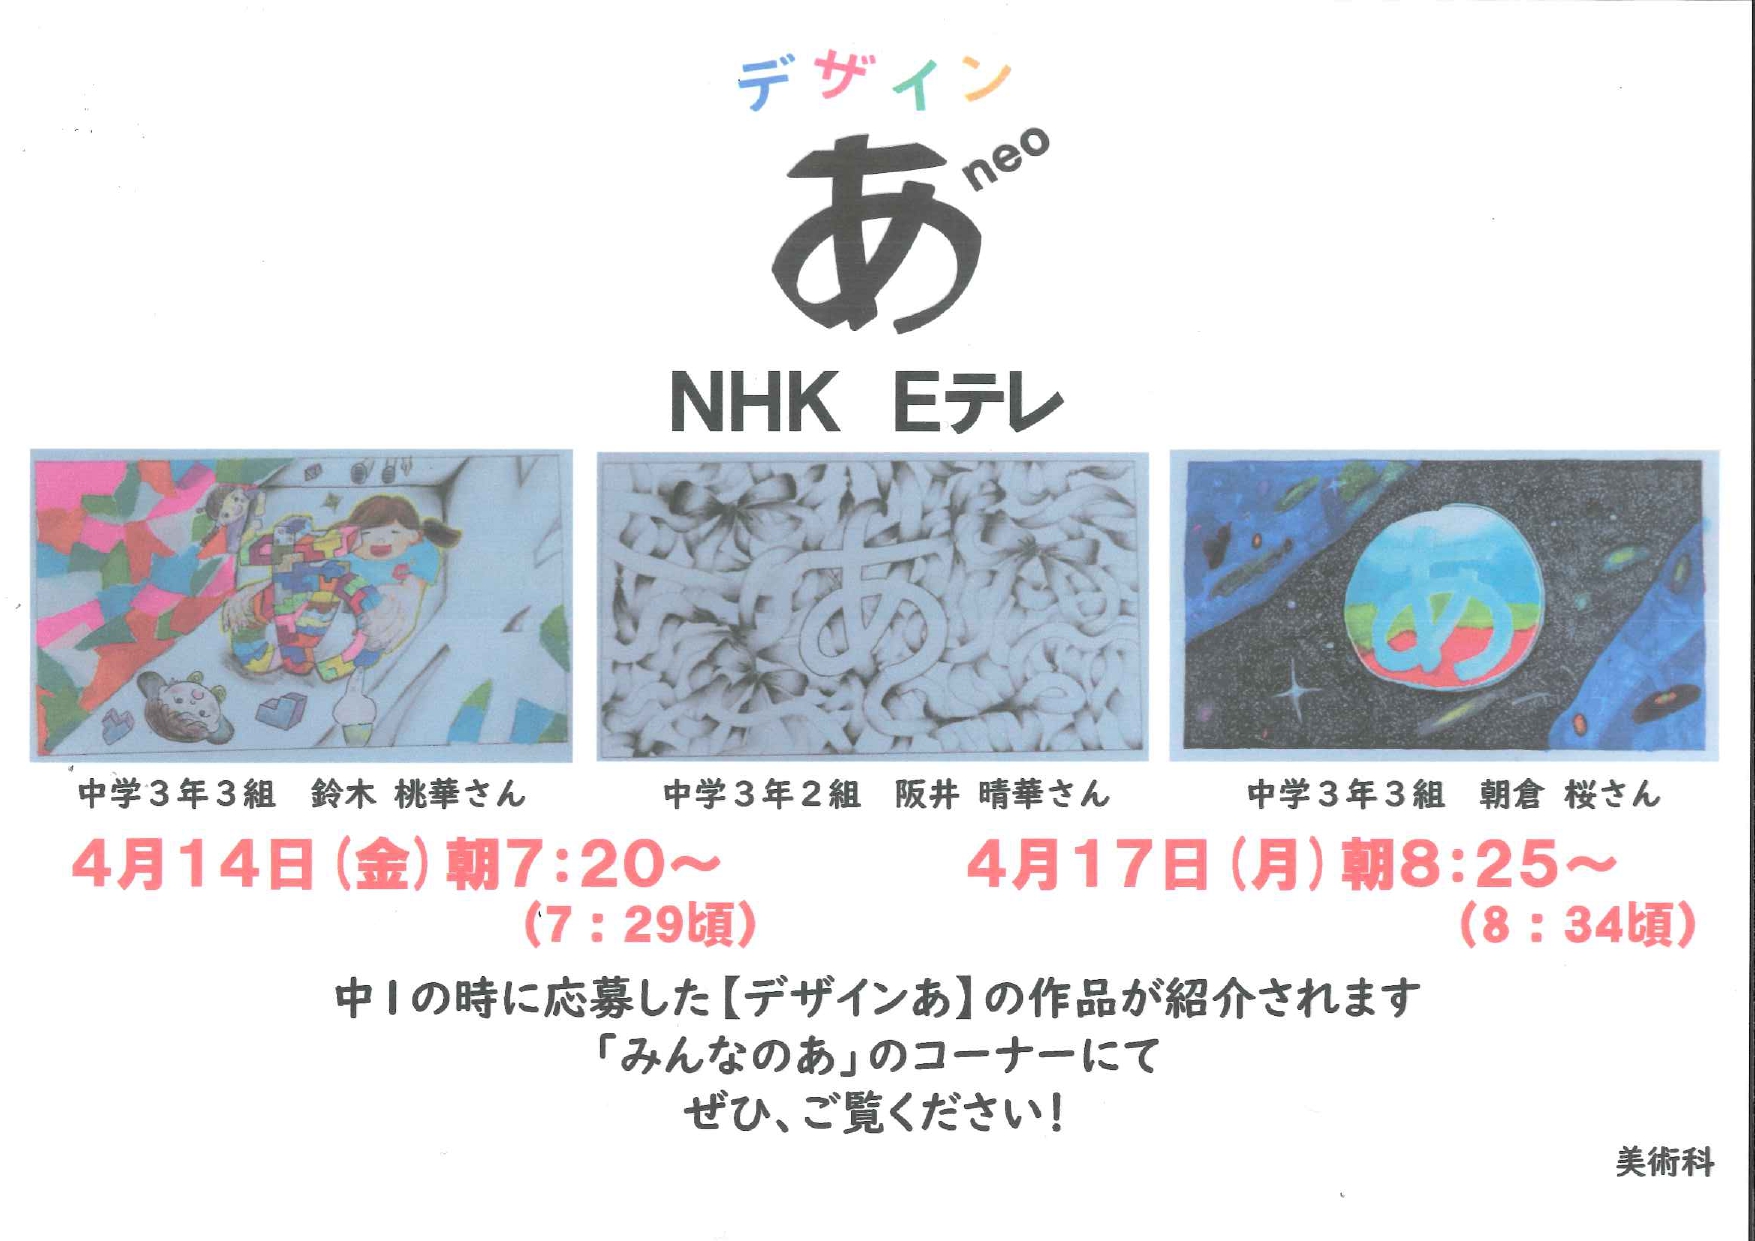 NHK Eテレ「デザイン あ neo」で作品が放送されました！ - 関西創価中学校